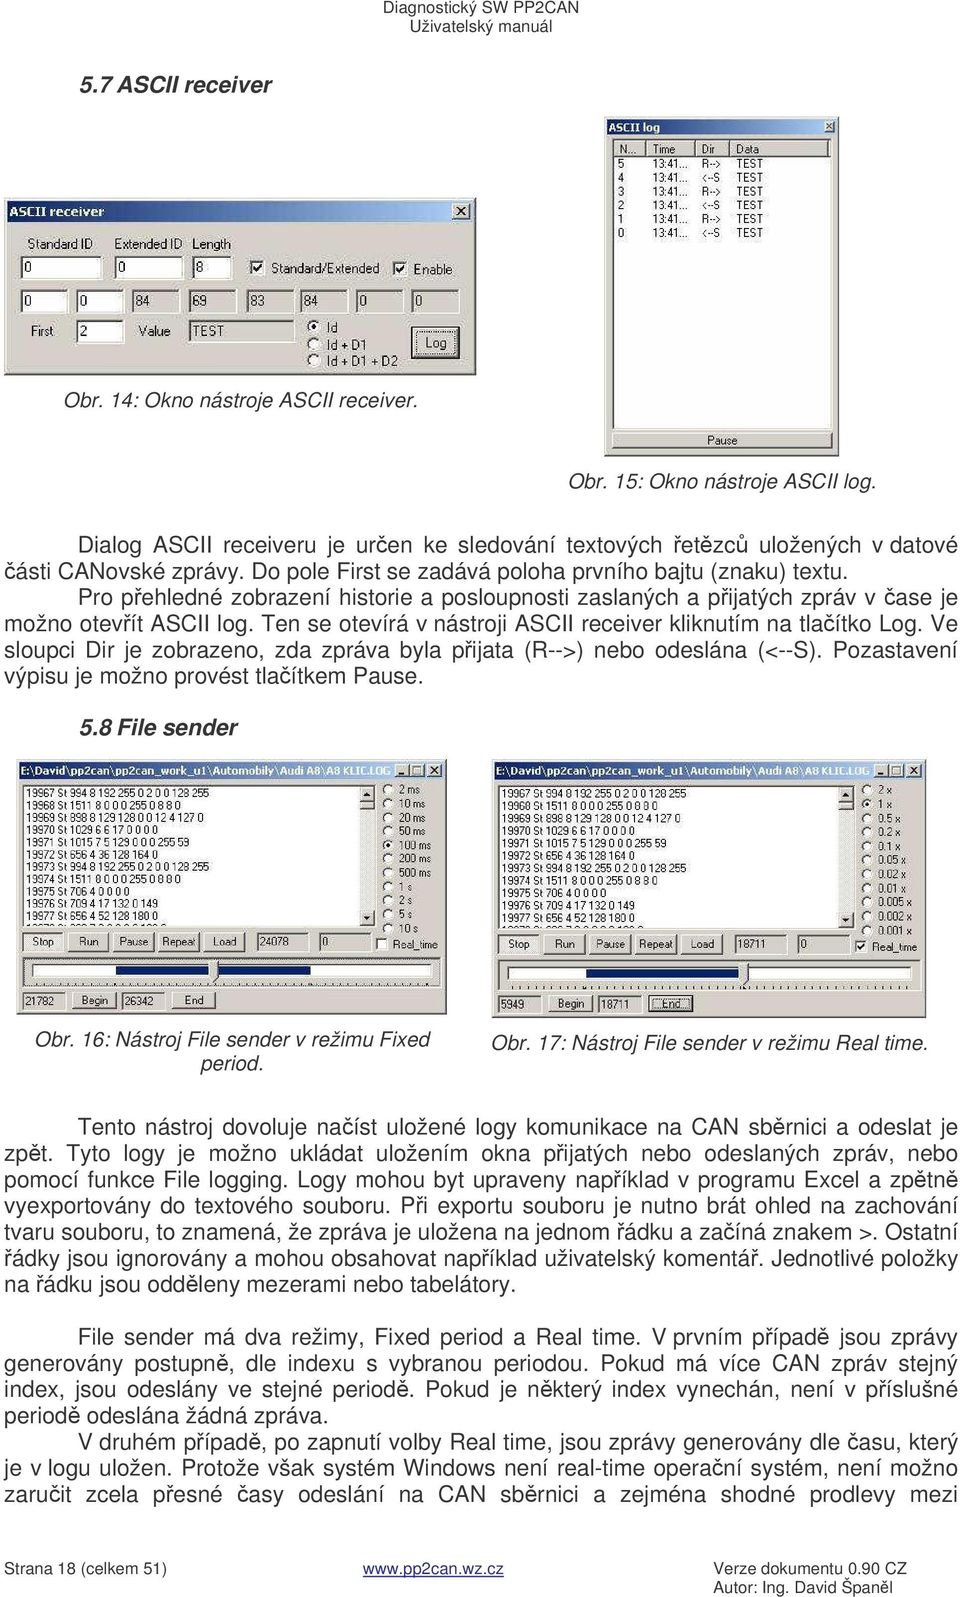 Ten se otevírá v nástroji ASCII receiver kliknutím na tlaítko Log. Ve sloupci Dir je zobrazeno, zda zpráva byla pijata (R-->) nebo odeslána (<--S). Pozastavení výpisu je možno provést tlaítkem Pause.